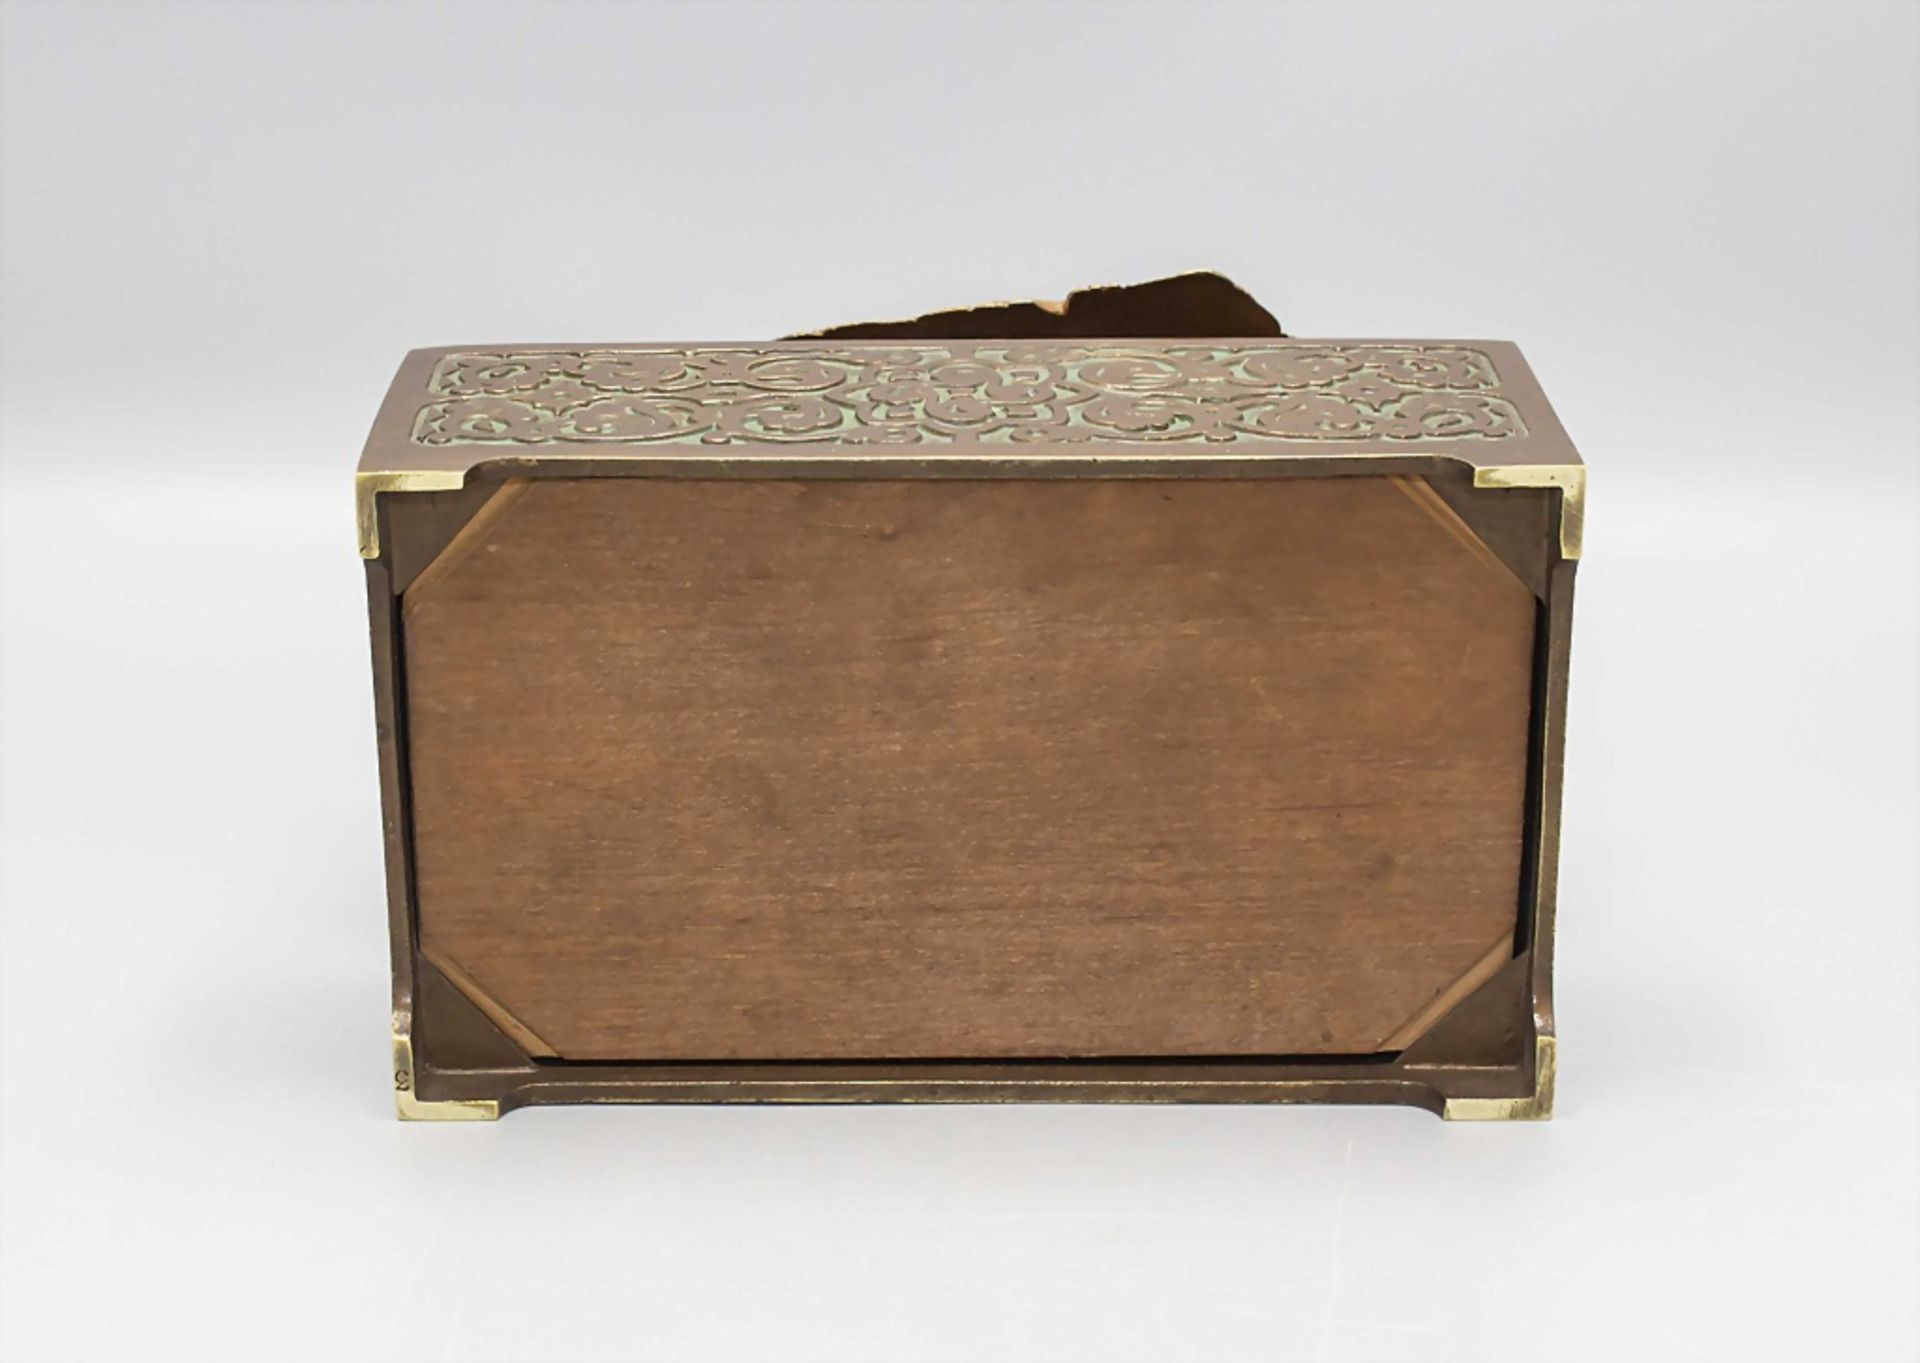 Zigarettendose / A cigarette box, Bergmann, Wien, um 1910 - Image 7 of 7